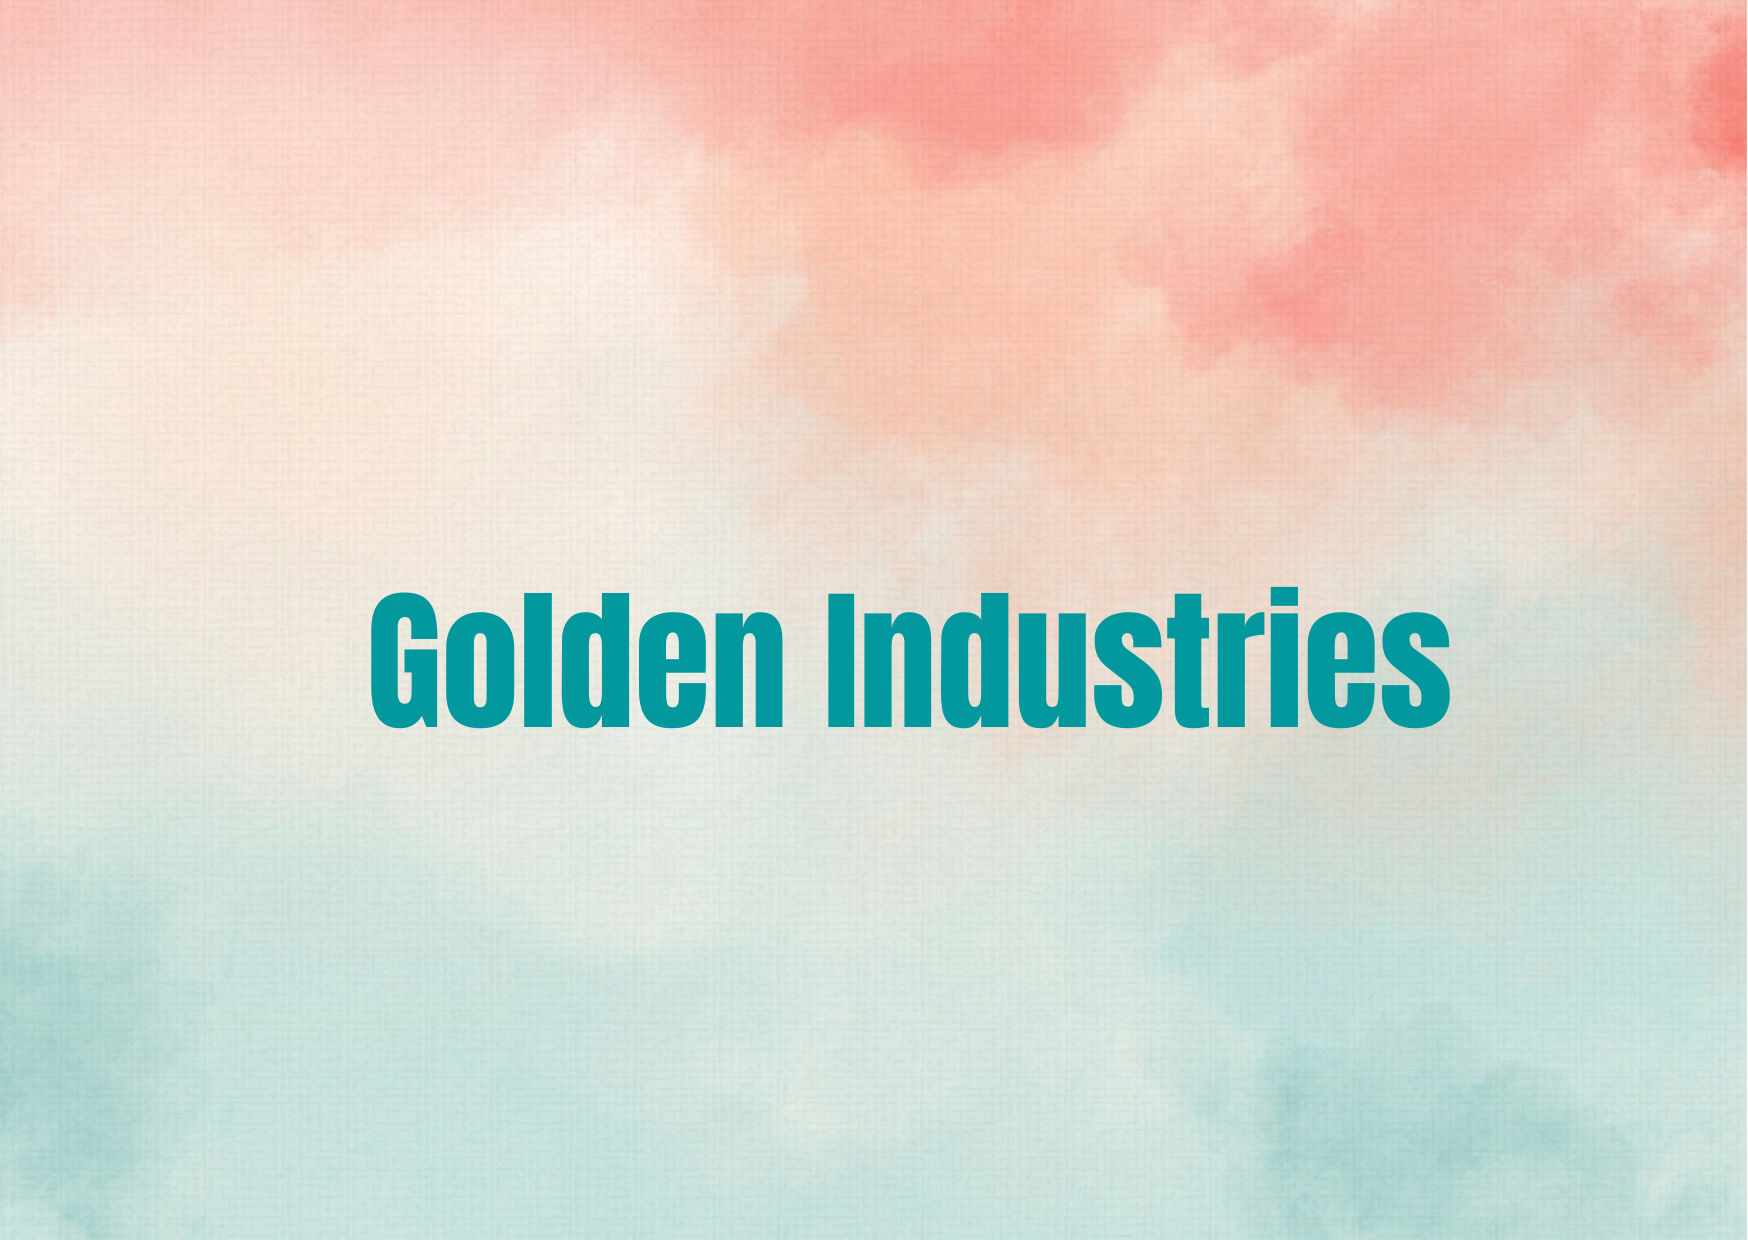 Golden Industries,   